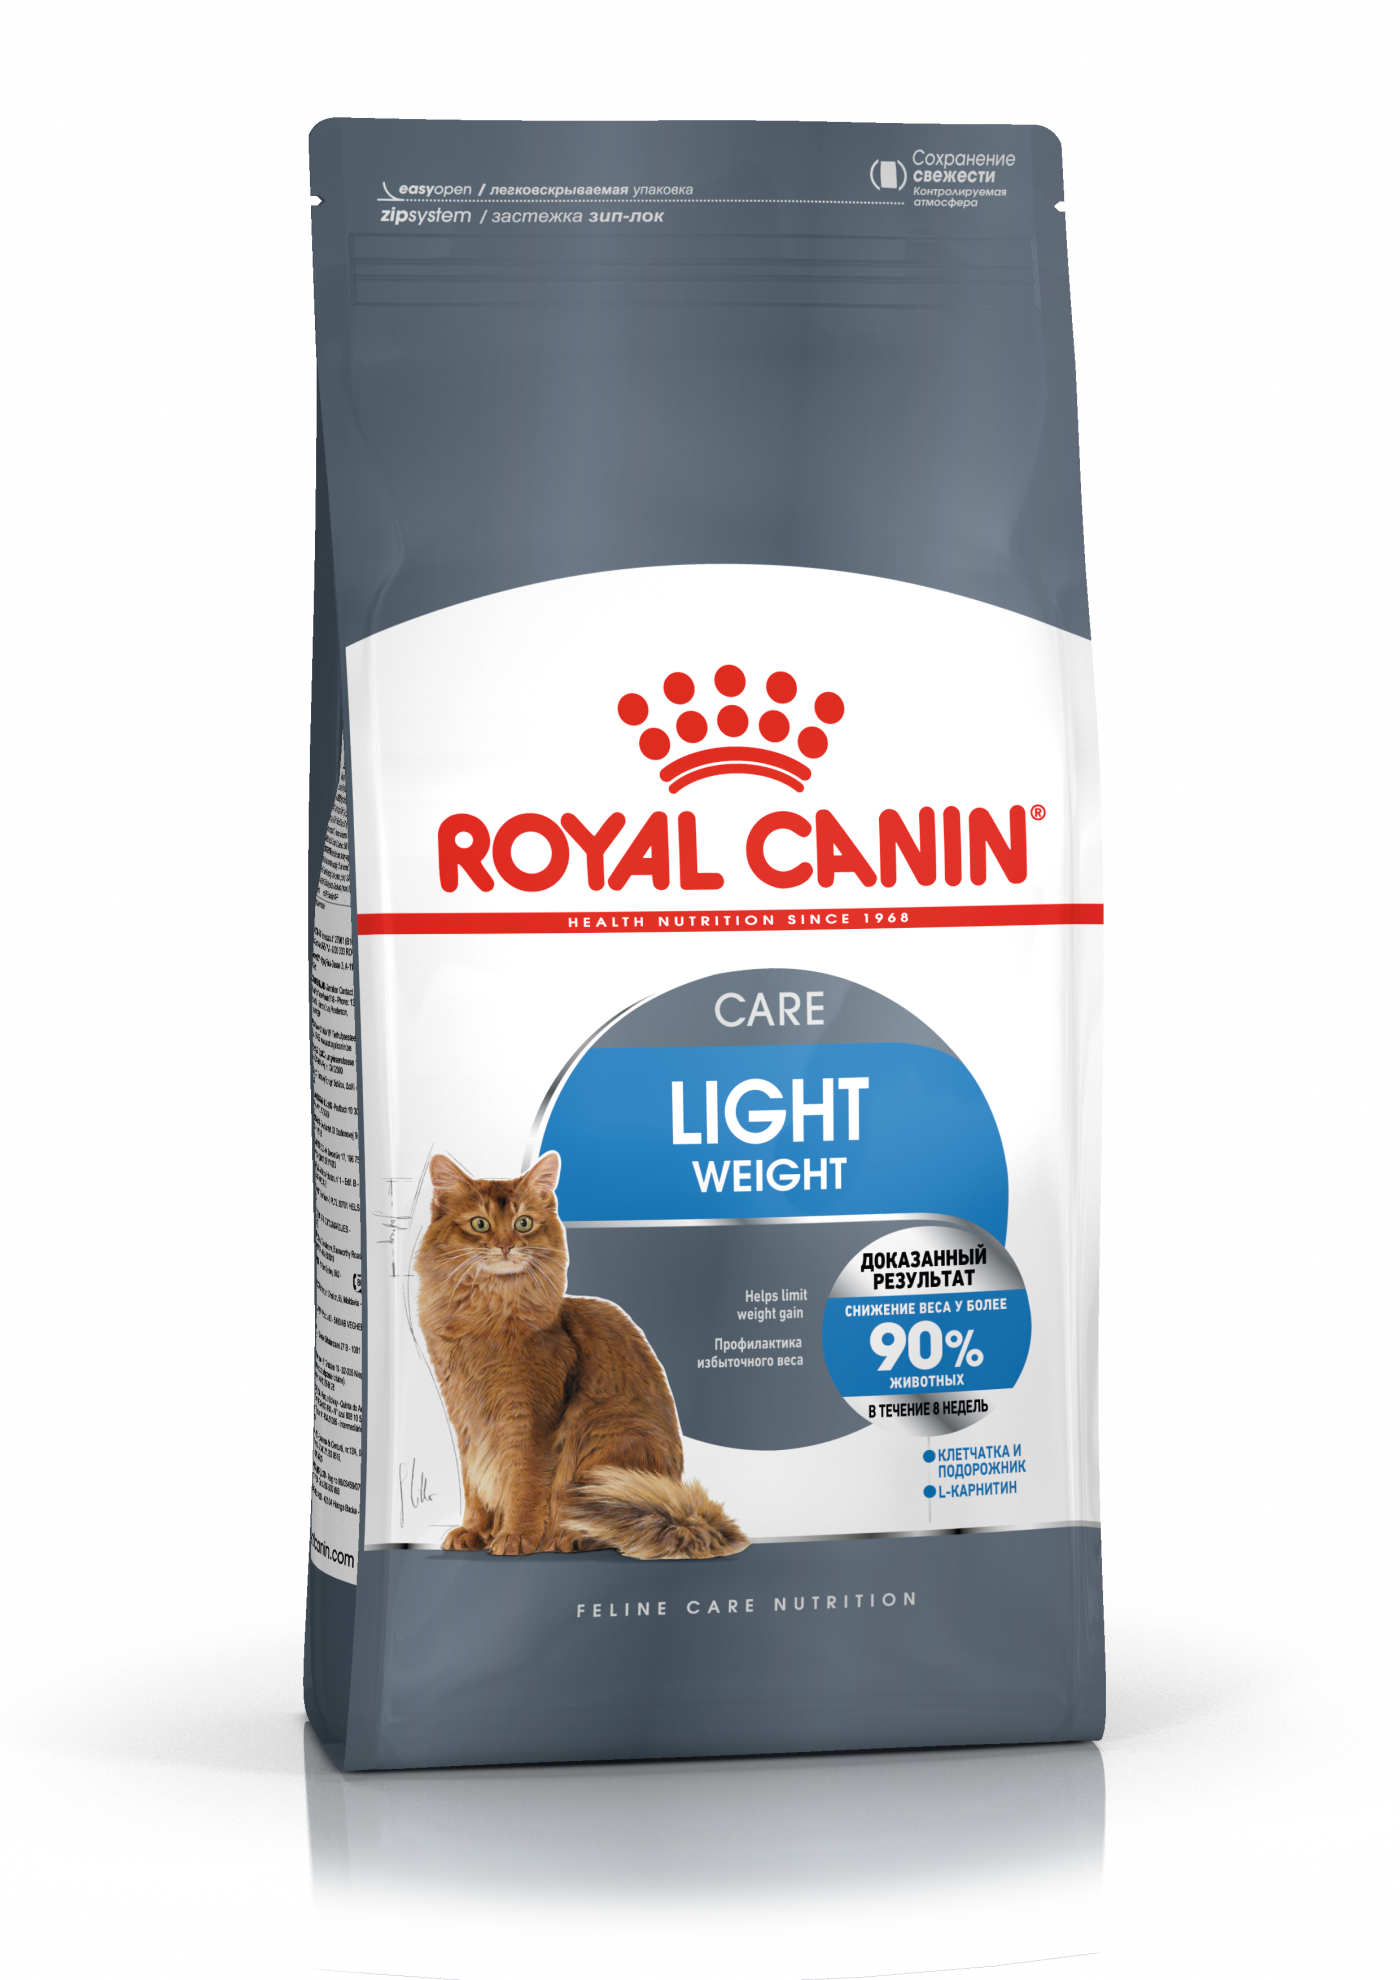 Как приучить взрослого кота к лотку - как научить взрослую кошку ходить в  туалет в лоток | Royal Canin